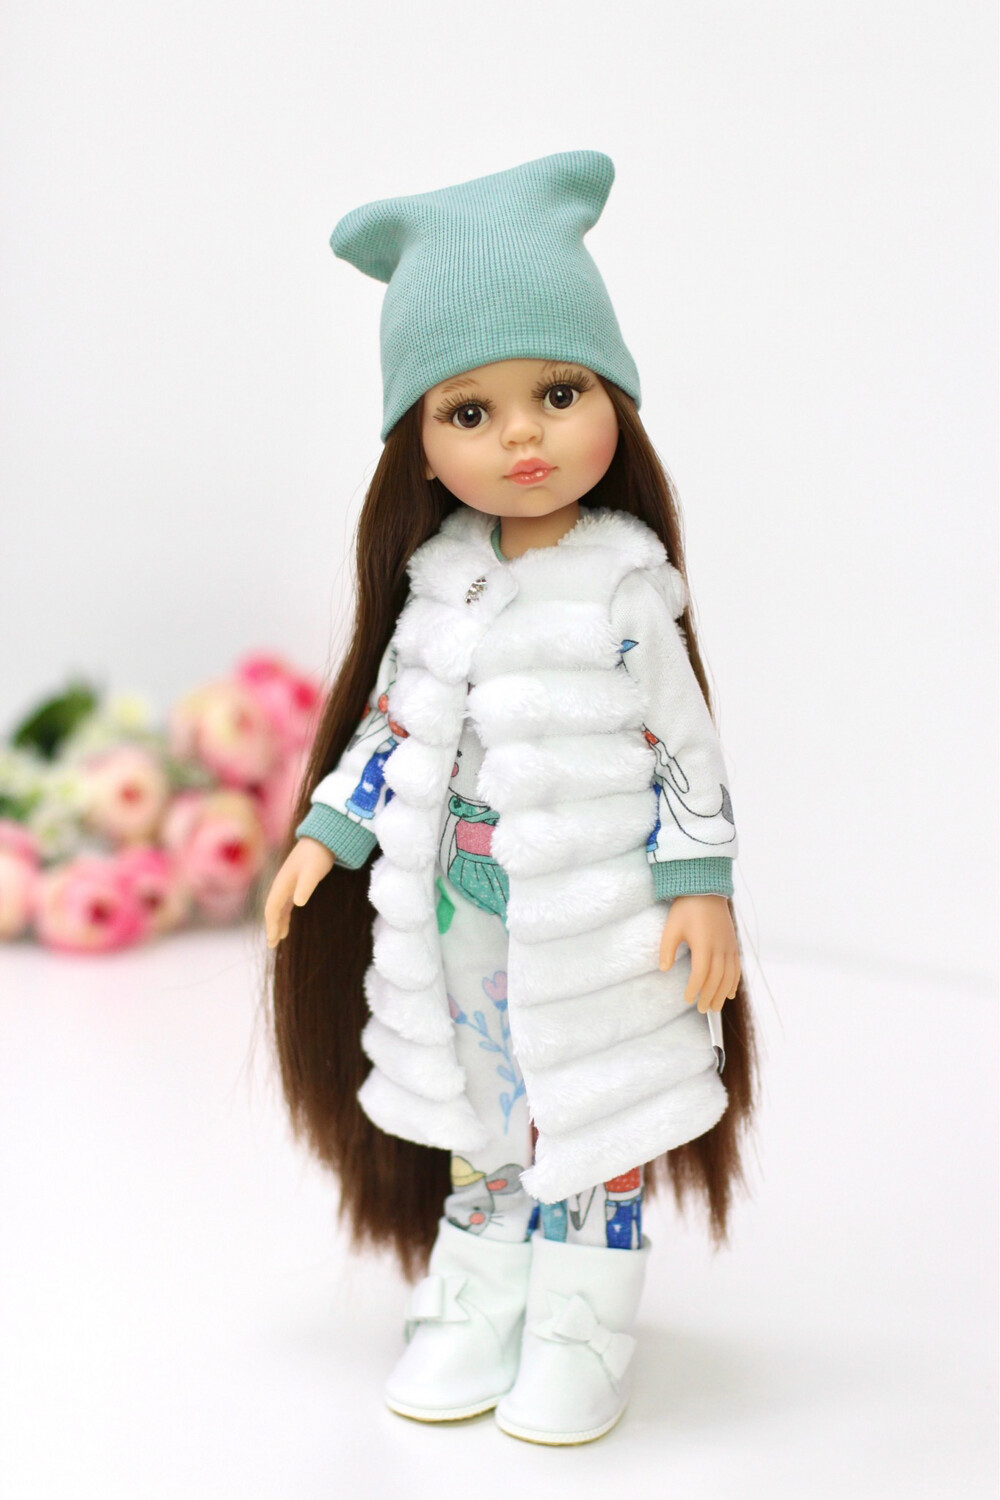 Кукла Кэрол Рапунцель с длинными волосами в стильном образе с меховой жилеткой и с сапожками на ножках (Паола Рейна) (пижама в комплекте), 34 см